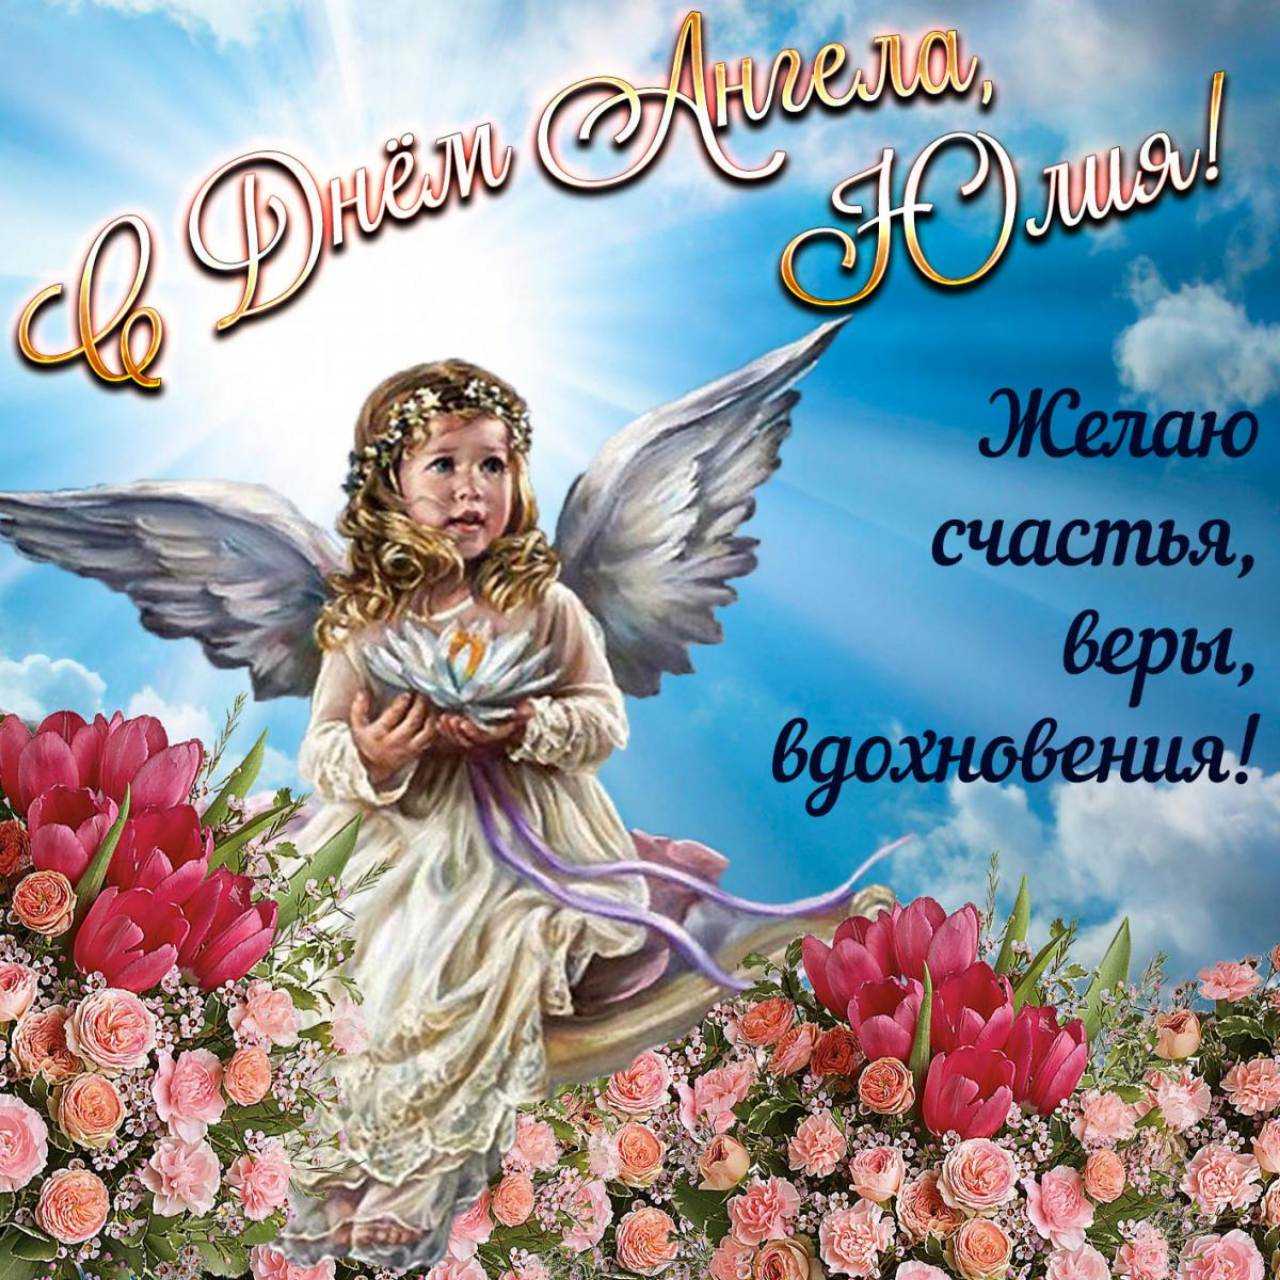 14 ноября именины, день ангела у Юлии, Ульяны, Юлианы, Иулиании: поздравления, открытки, красивые стихи и пожелания в день ангела